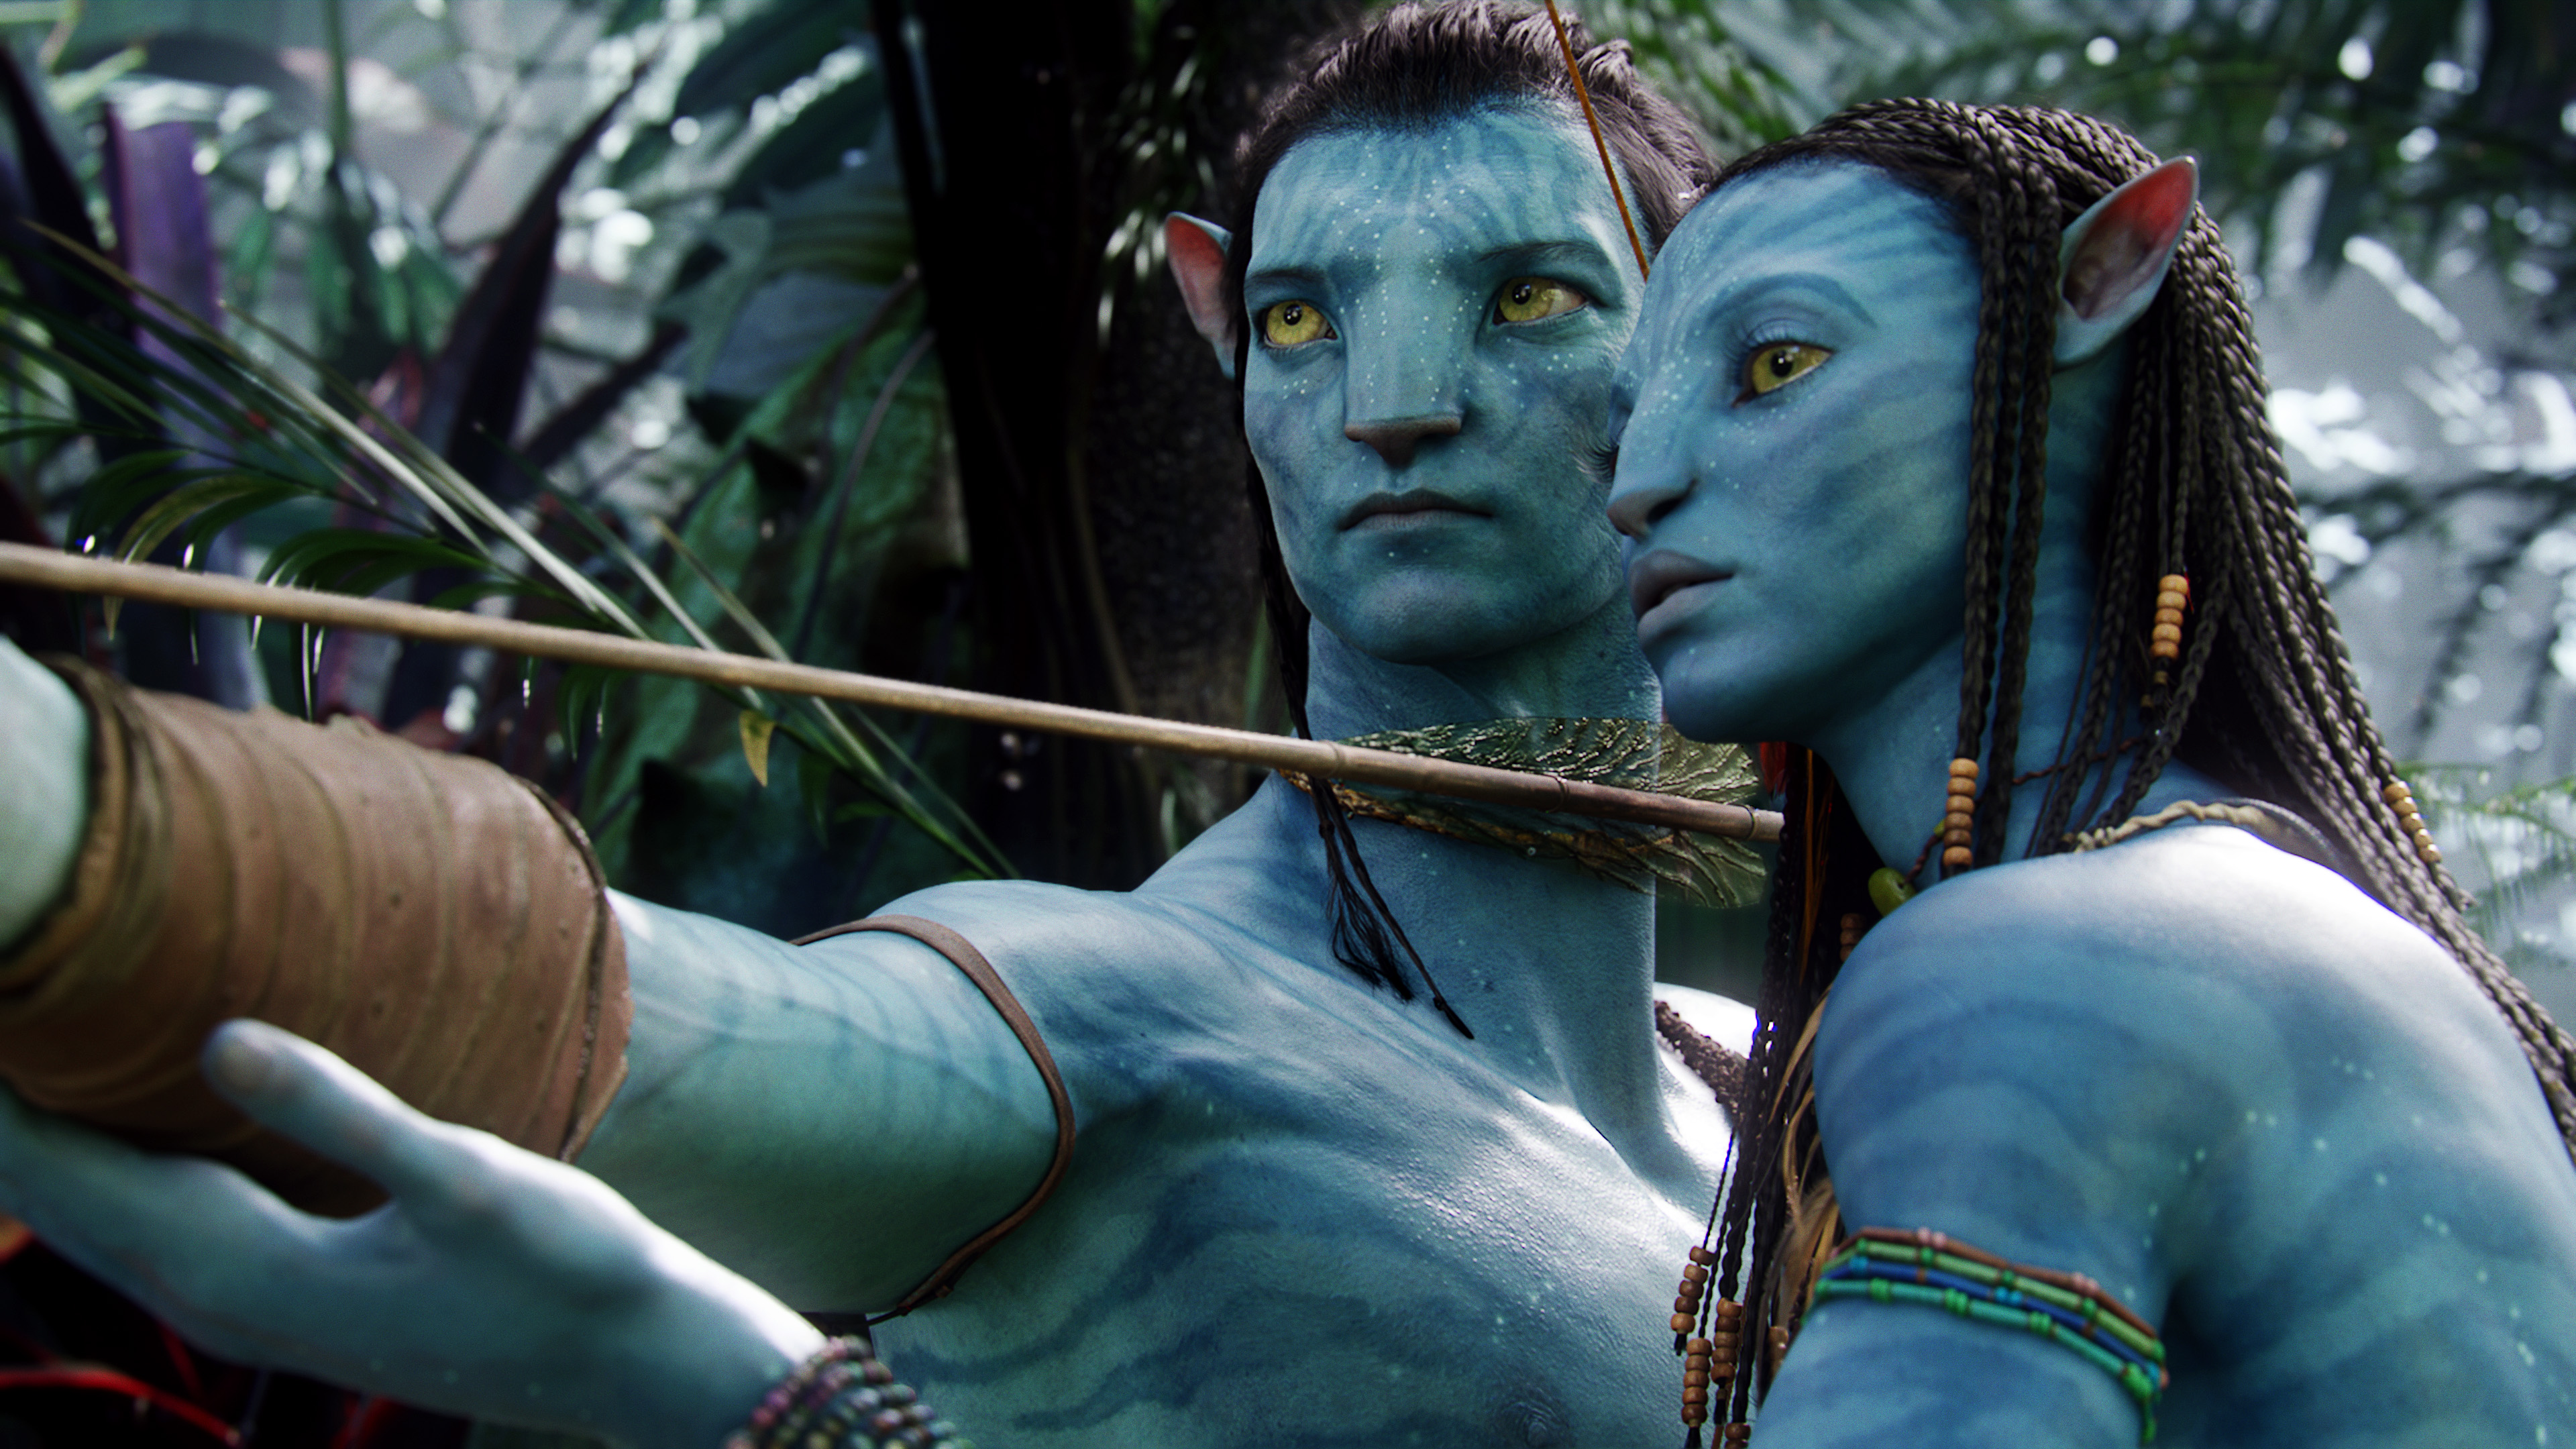 Avatar 2024: Bạn đã sẵn sàng trở lại Trái Đất giả tưởng đầy màu sắc với Avatar 2024? Điều đó là hoàn toàn có thể nhờ công nghệ phim 3D tiên tiến và những pha hành động đẹp mắt. Hãy tận hưởng những phút giây phiêu lưu kỳ thú cùng nhân vật chính Jake Sully trong phần tiếp theo của bộ phim kinh điển này!